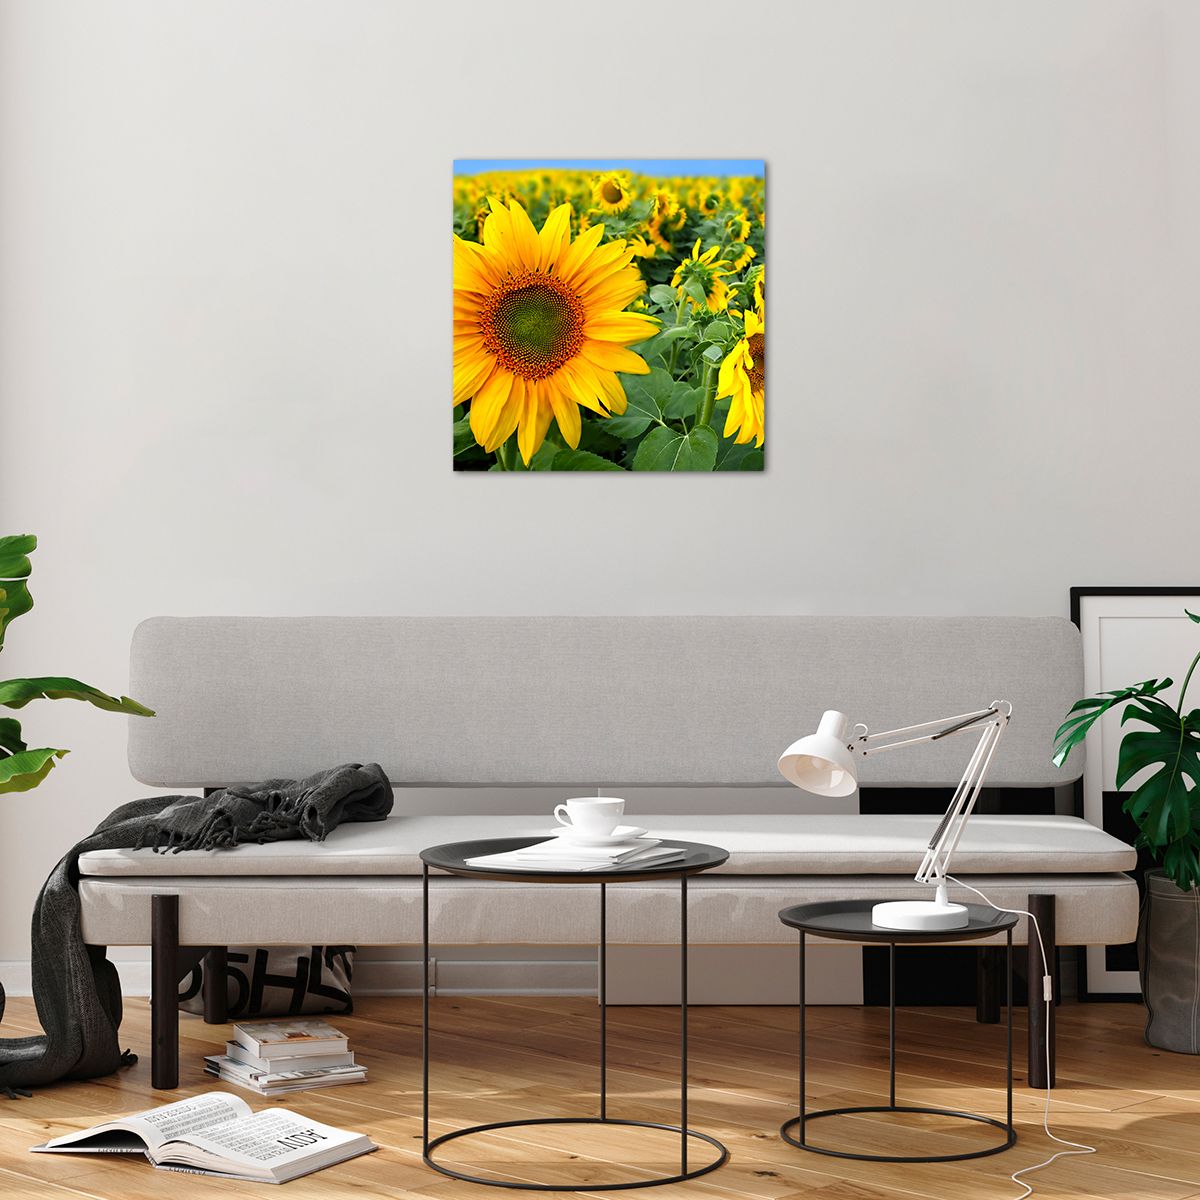 Bilder auf glas Blumen, Bilder auf glas Sonnenblumen, Bilder auf glas Natur, Bilder auf glas Garten, Bilder auf glas Gelbe Blumen